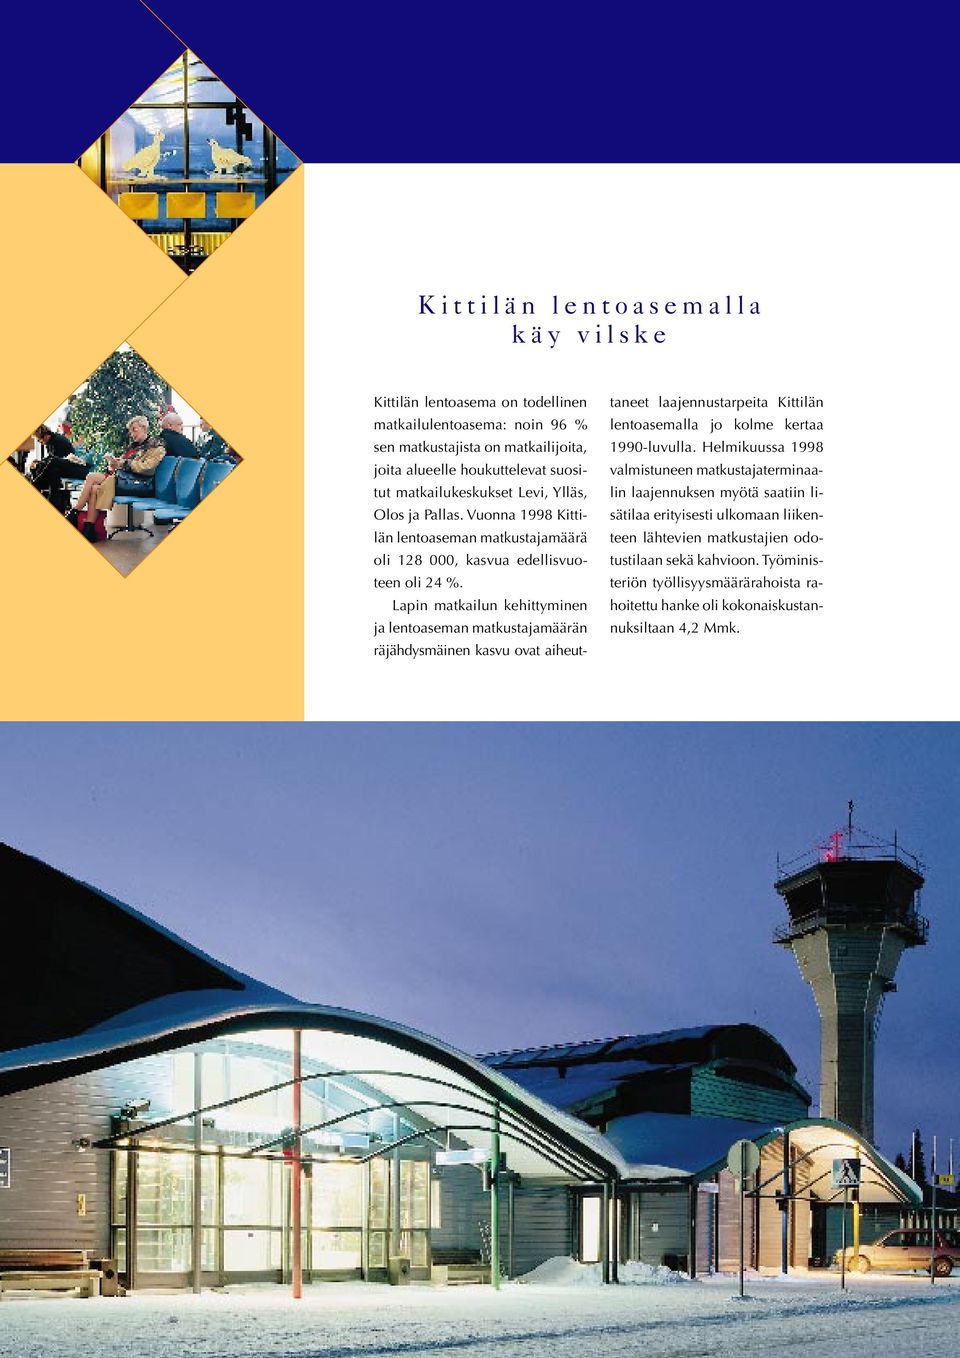 Lapin matkailun kehittyminen ja lentoaseman matkustajamäärän räjähdysmäinen kasvu ovat aiheut- taneet laajennustarpeita Kittilän lentoasemalla jo kolme kertaa 1990-luvulla.